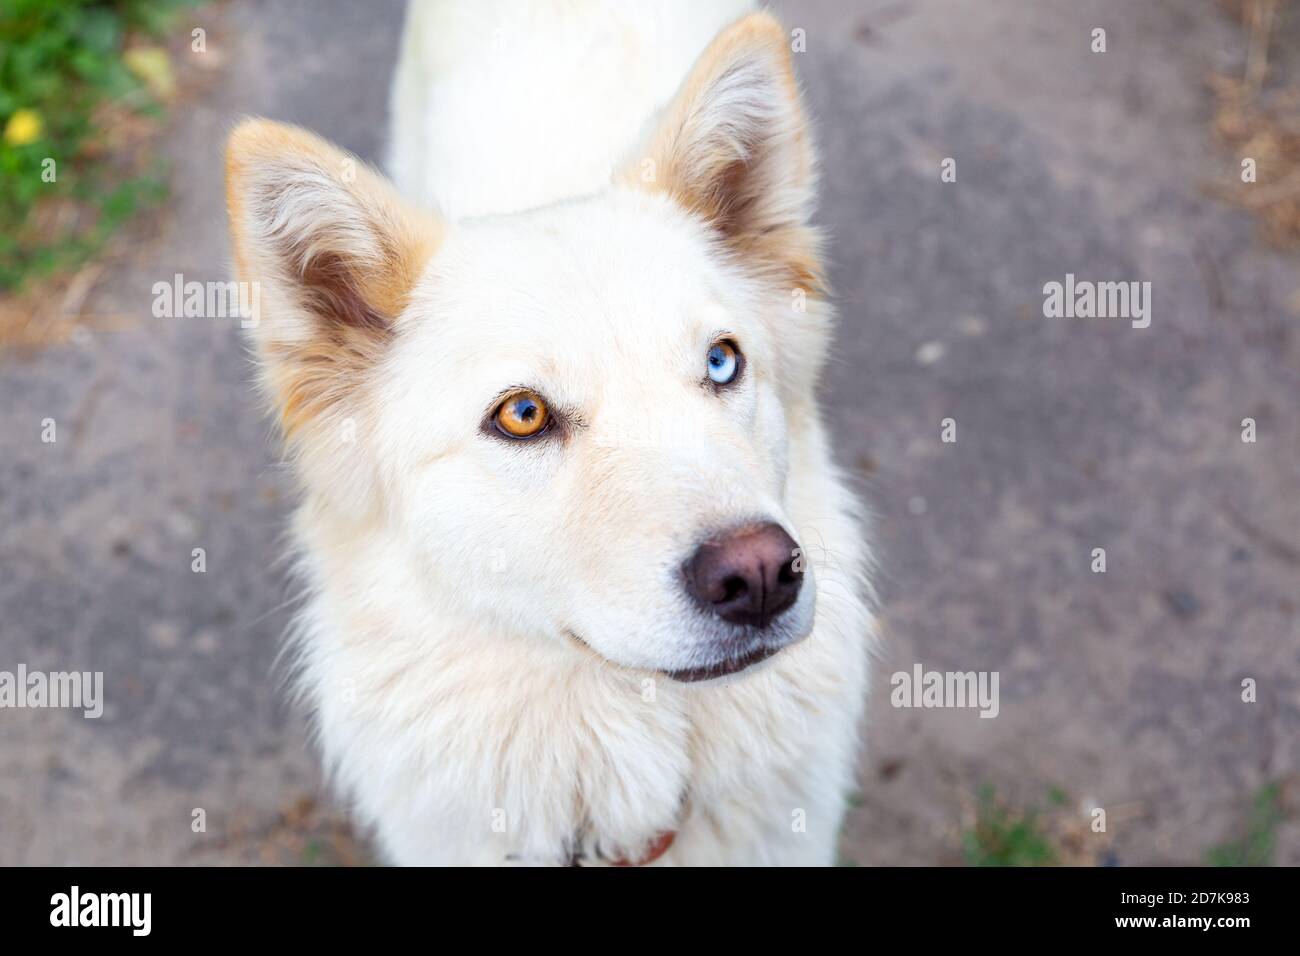 Nahaufnahme eines weißen Hundes mit Heterochromie. Augen in verschiedenen Farben. Ungewöhnlich, besonders. Schaut auf die Kamera. Mangel an Melanin, Pigmentierung. Stockfoto